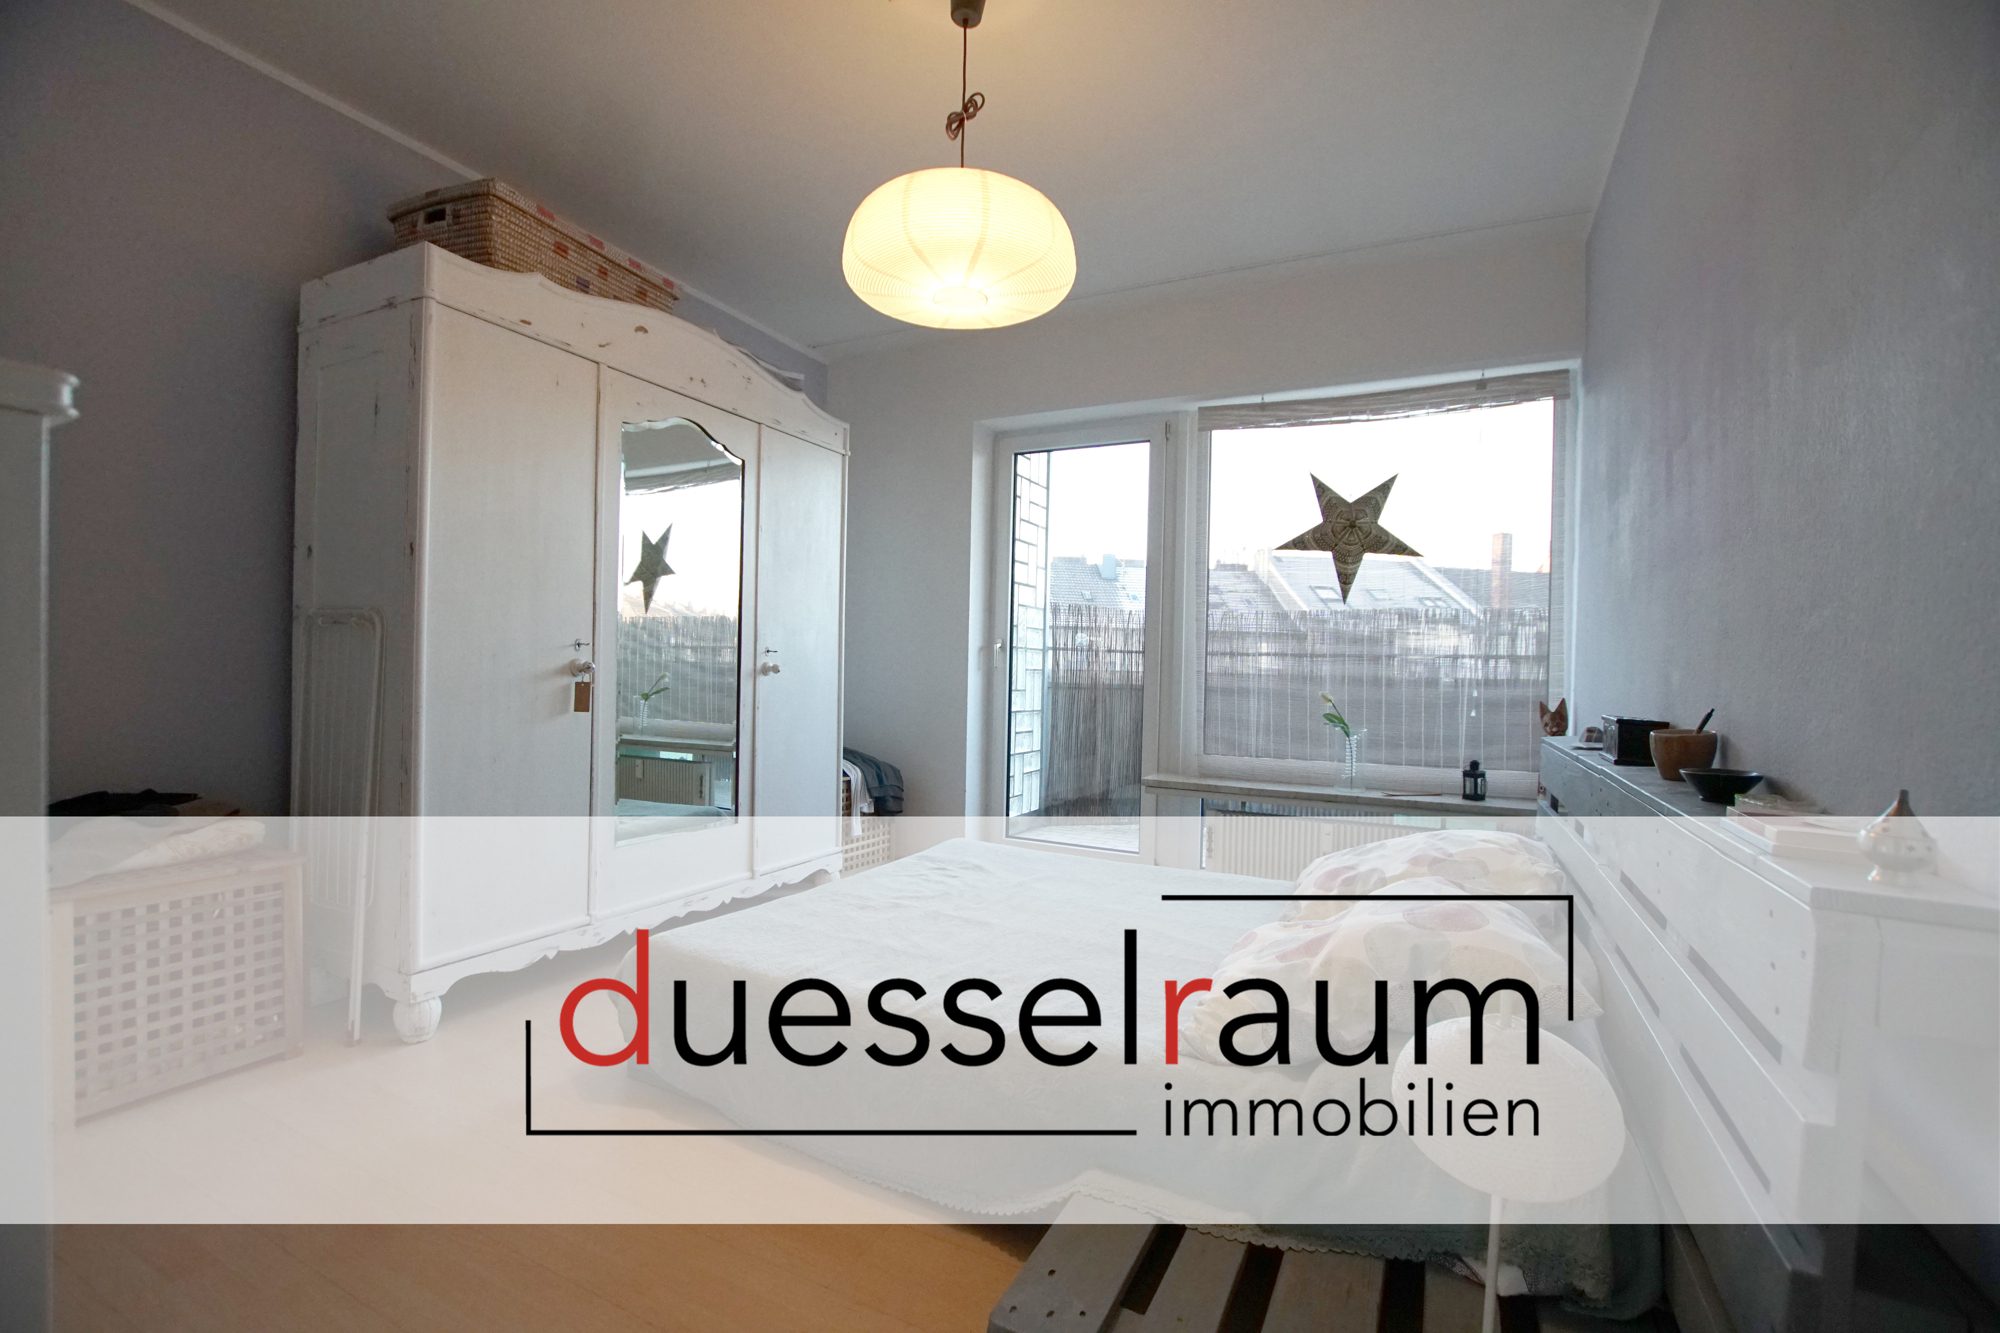 Immobilienangebot - Düsseldorf / Bilk - Alle - Bilk: gut geschnittene 2-Zimmerwohnung mit zwei Badezimmern und zwei Balkonen in zentraler Lage